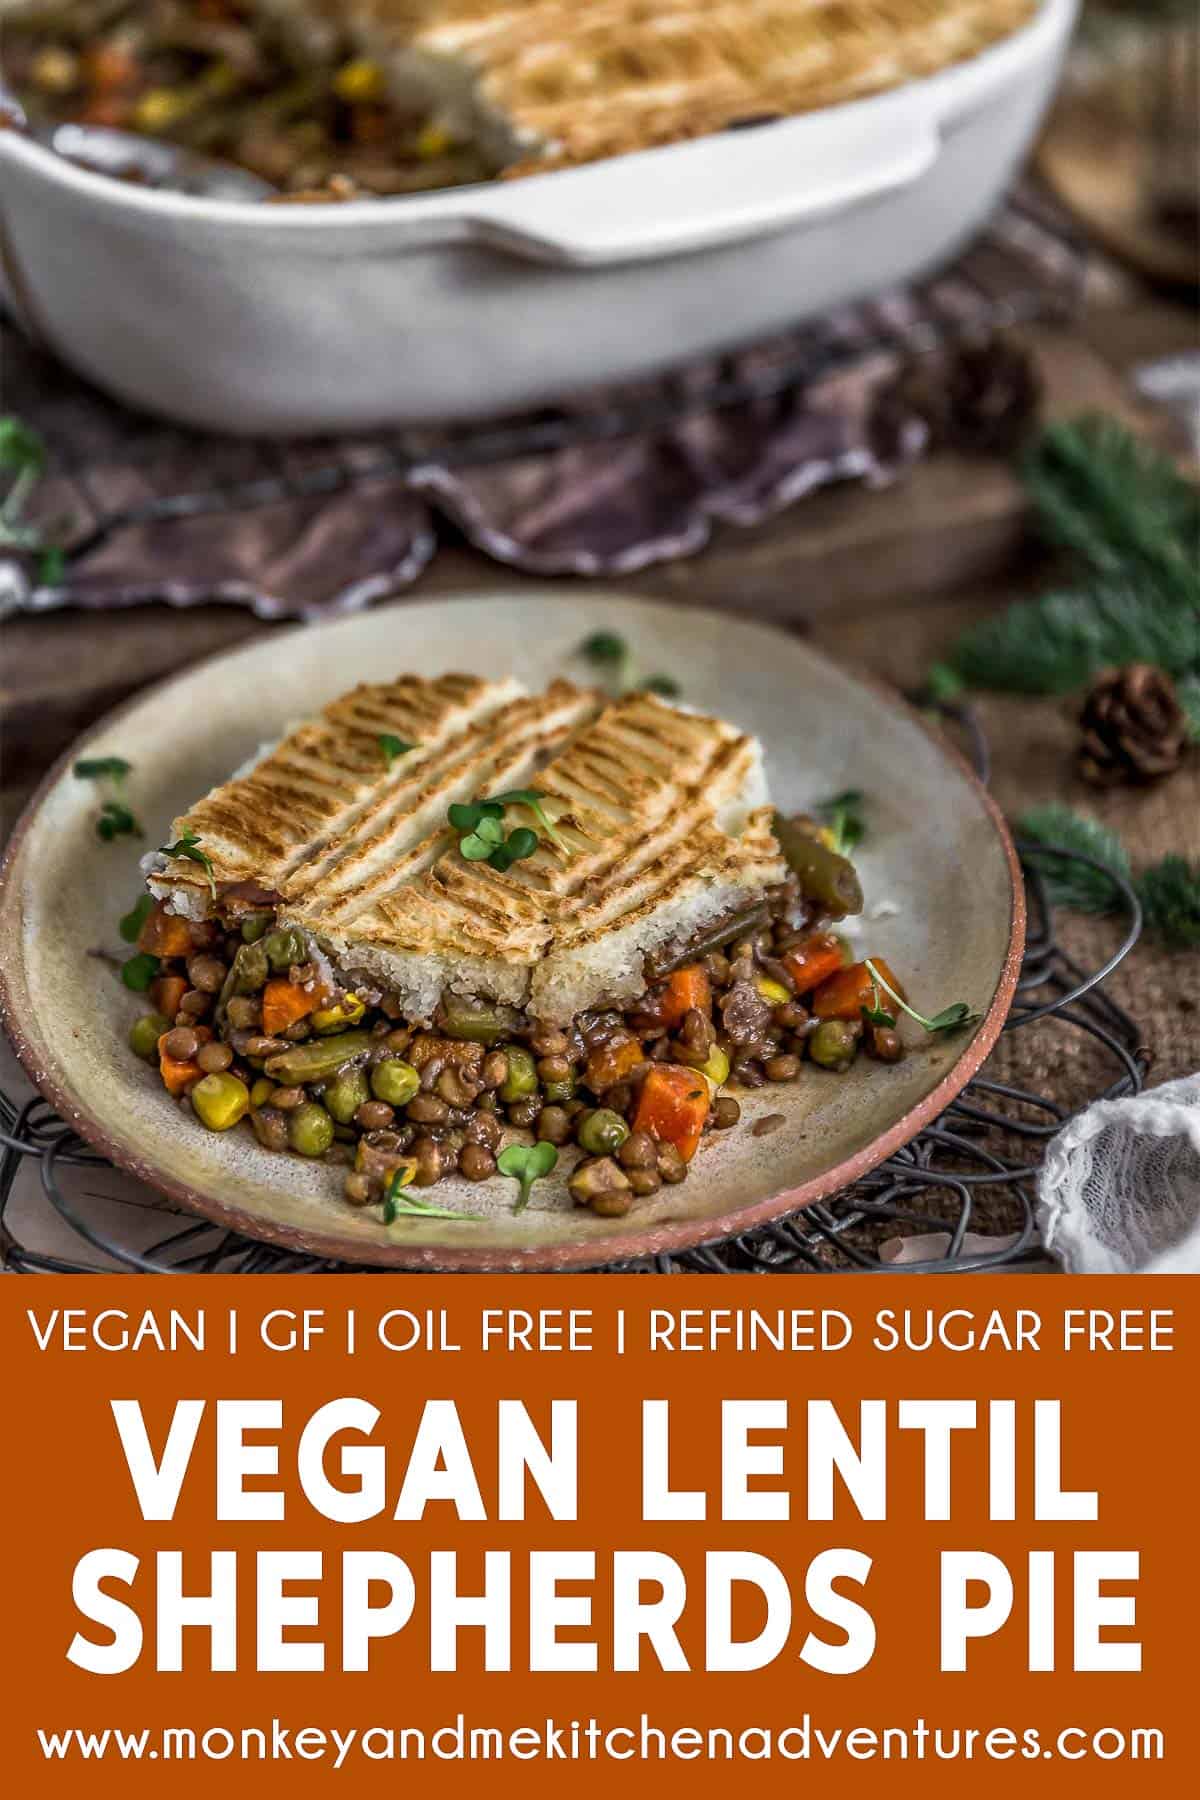 Vegan Lentil Shepherds Pie with text description